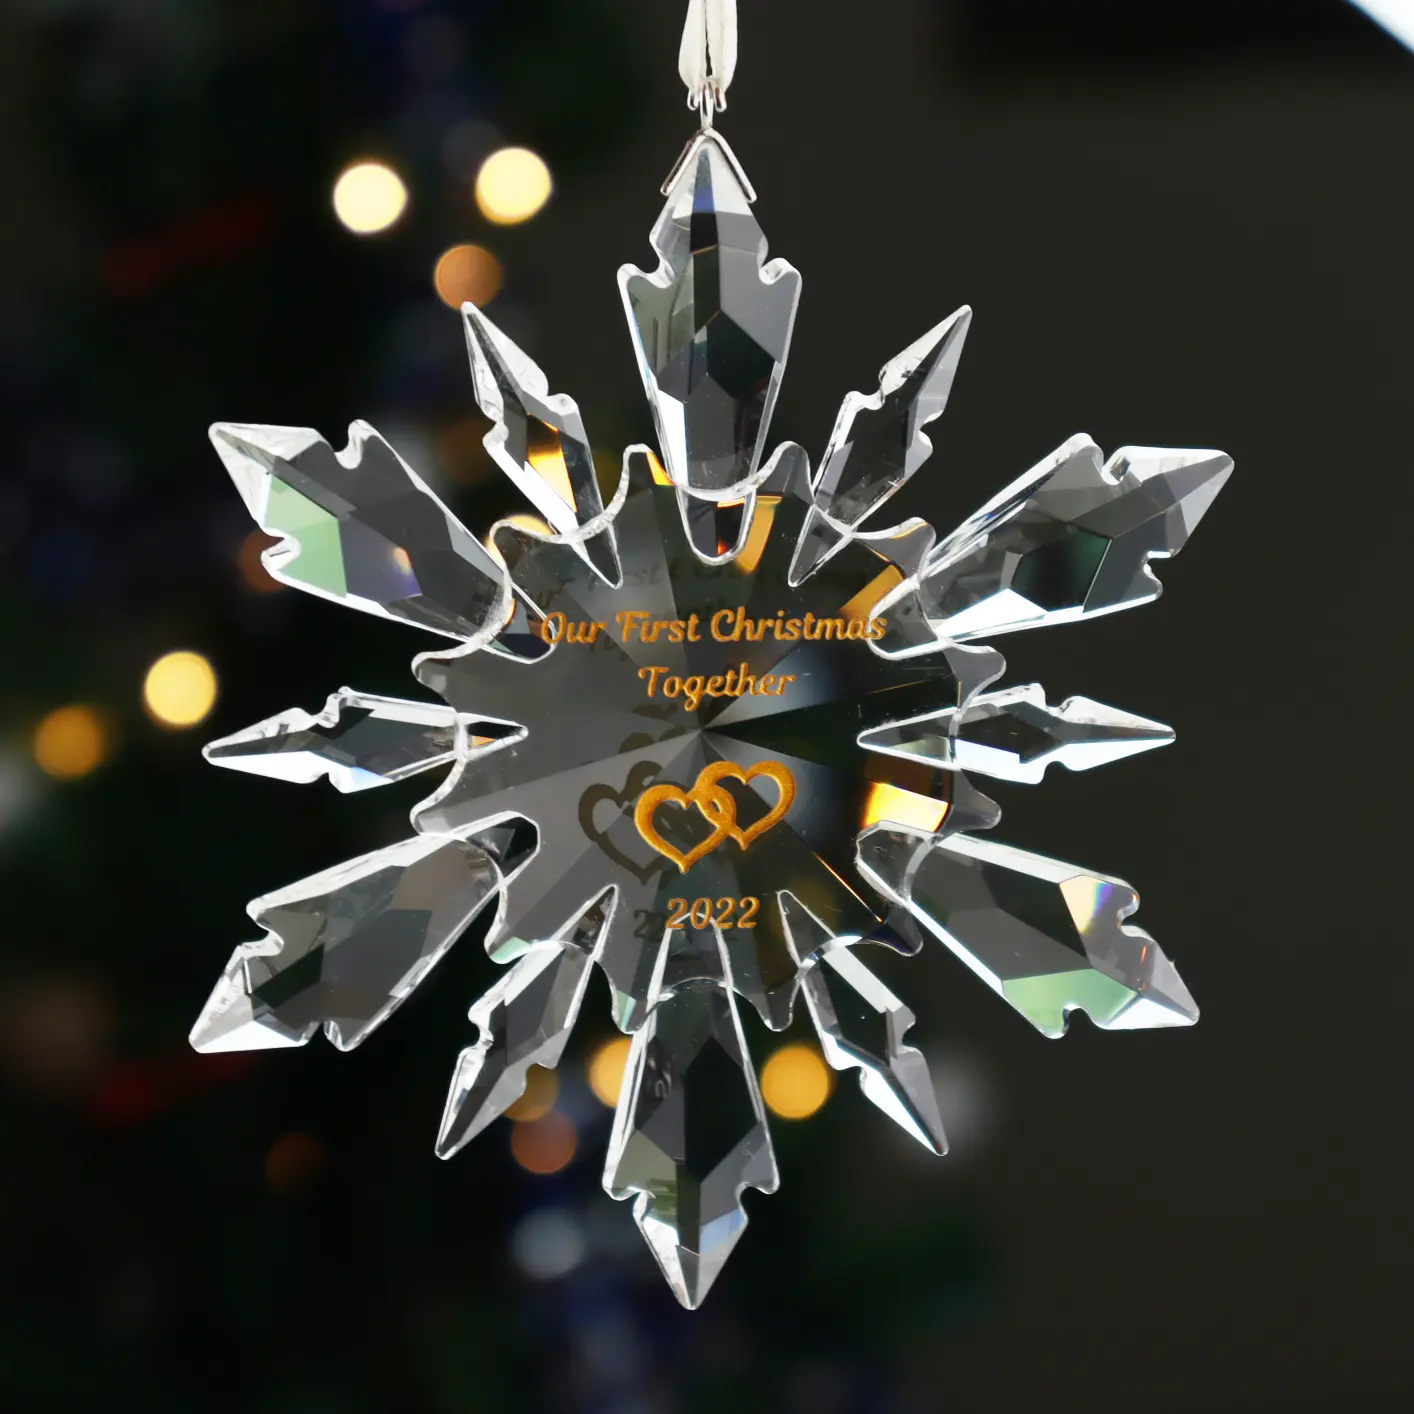 اوجو تصميم مخصص للزجاج الكريستال والزجاج زخرفة ندفة الثلج لهدايا عيد الميلاد